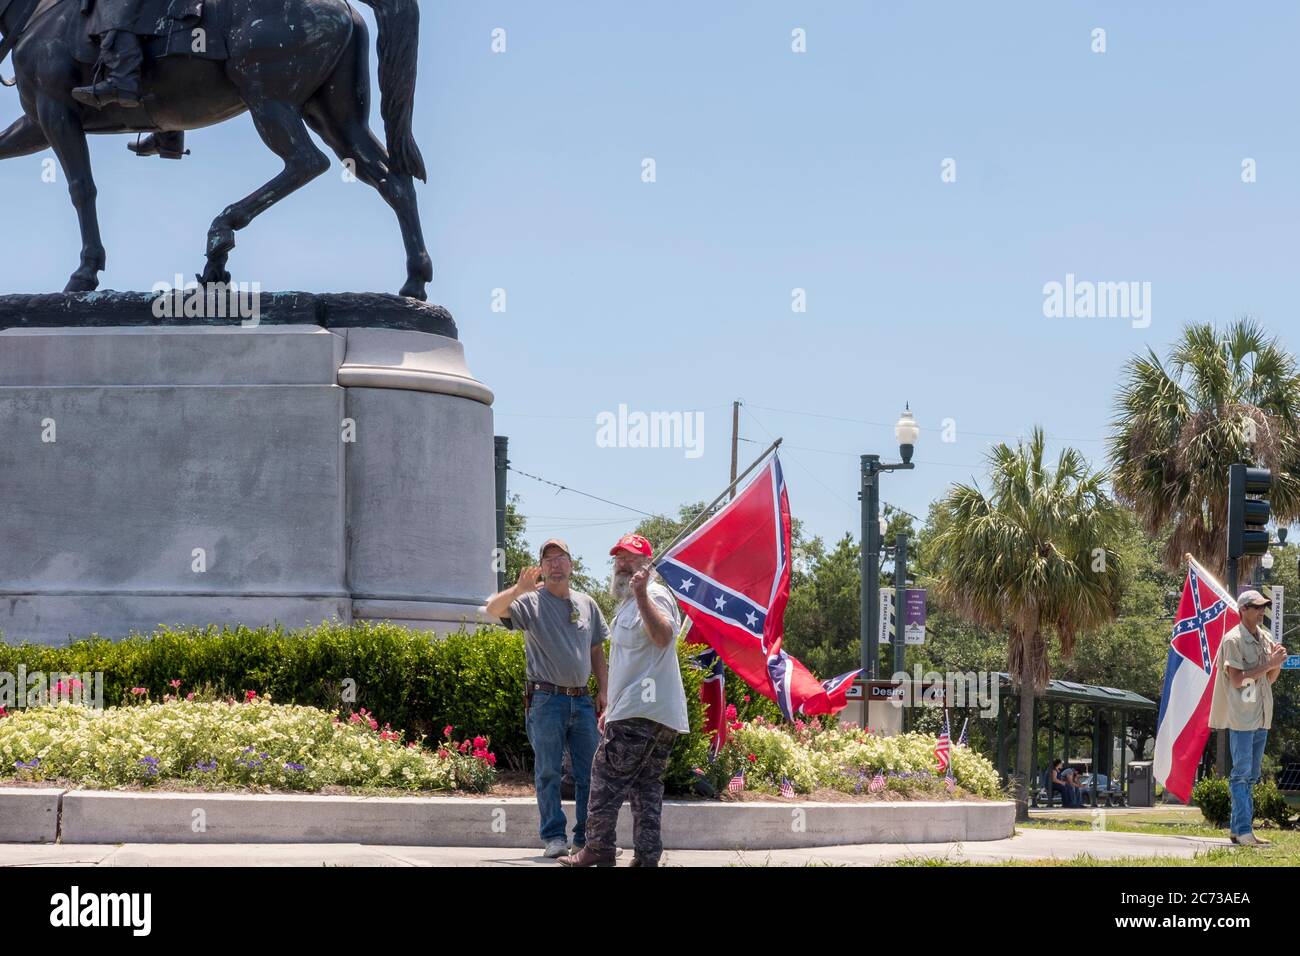 Nueva Orleans, Louisiana/USA-7 de mayo de 2017: Manifestantes en la estatua de Beauregard protestando por la retirada de los Estados Confederados Foto de stock